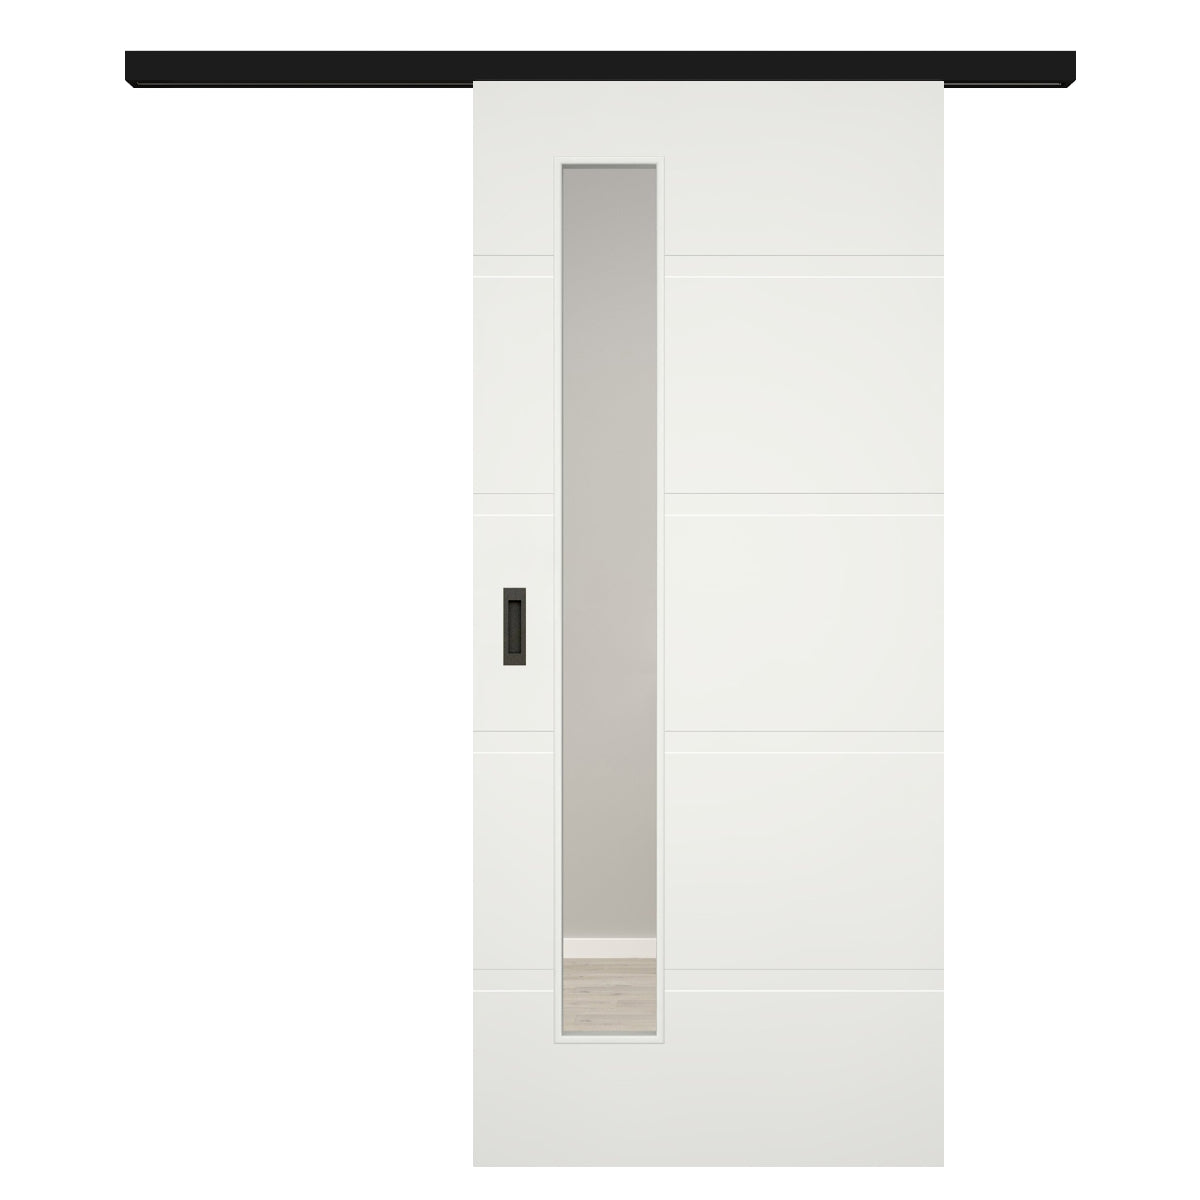 Schiebetür für Set mit schwarzem Laufkasten mit Lichtausschnittsoft-weiß 4 breite Rillen - Modell Designtür QB41LAS